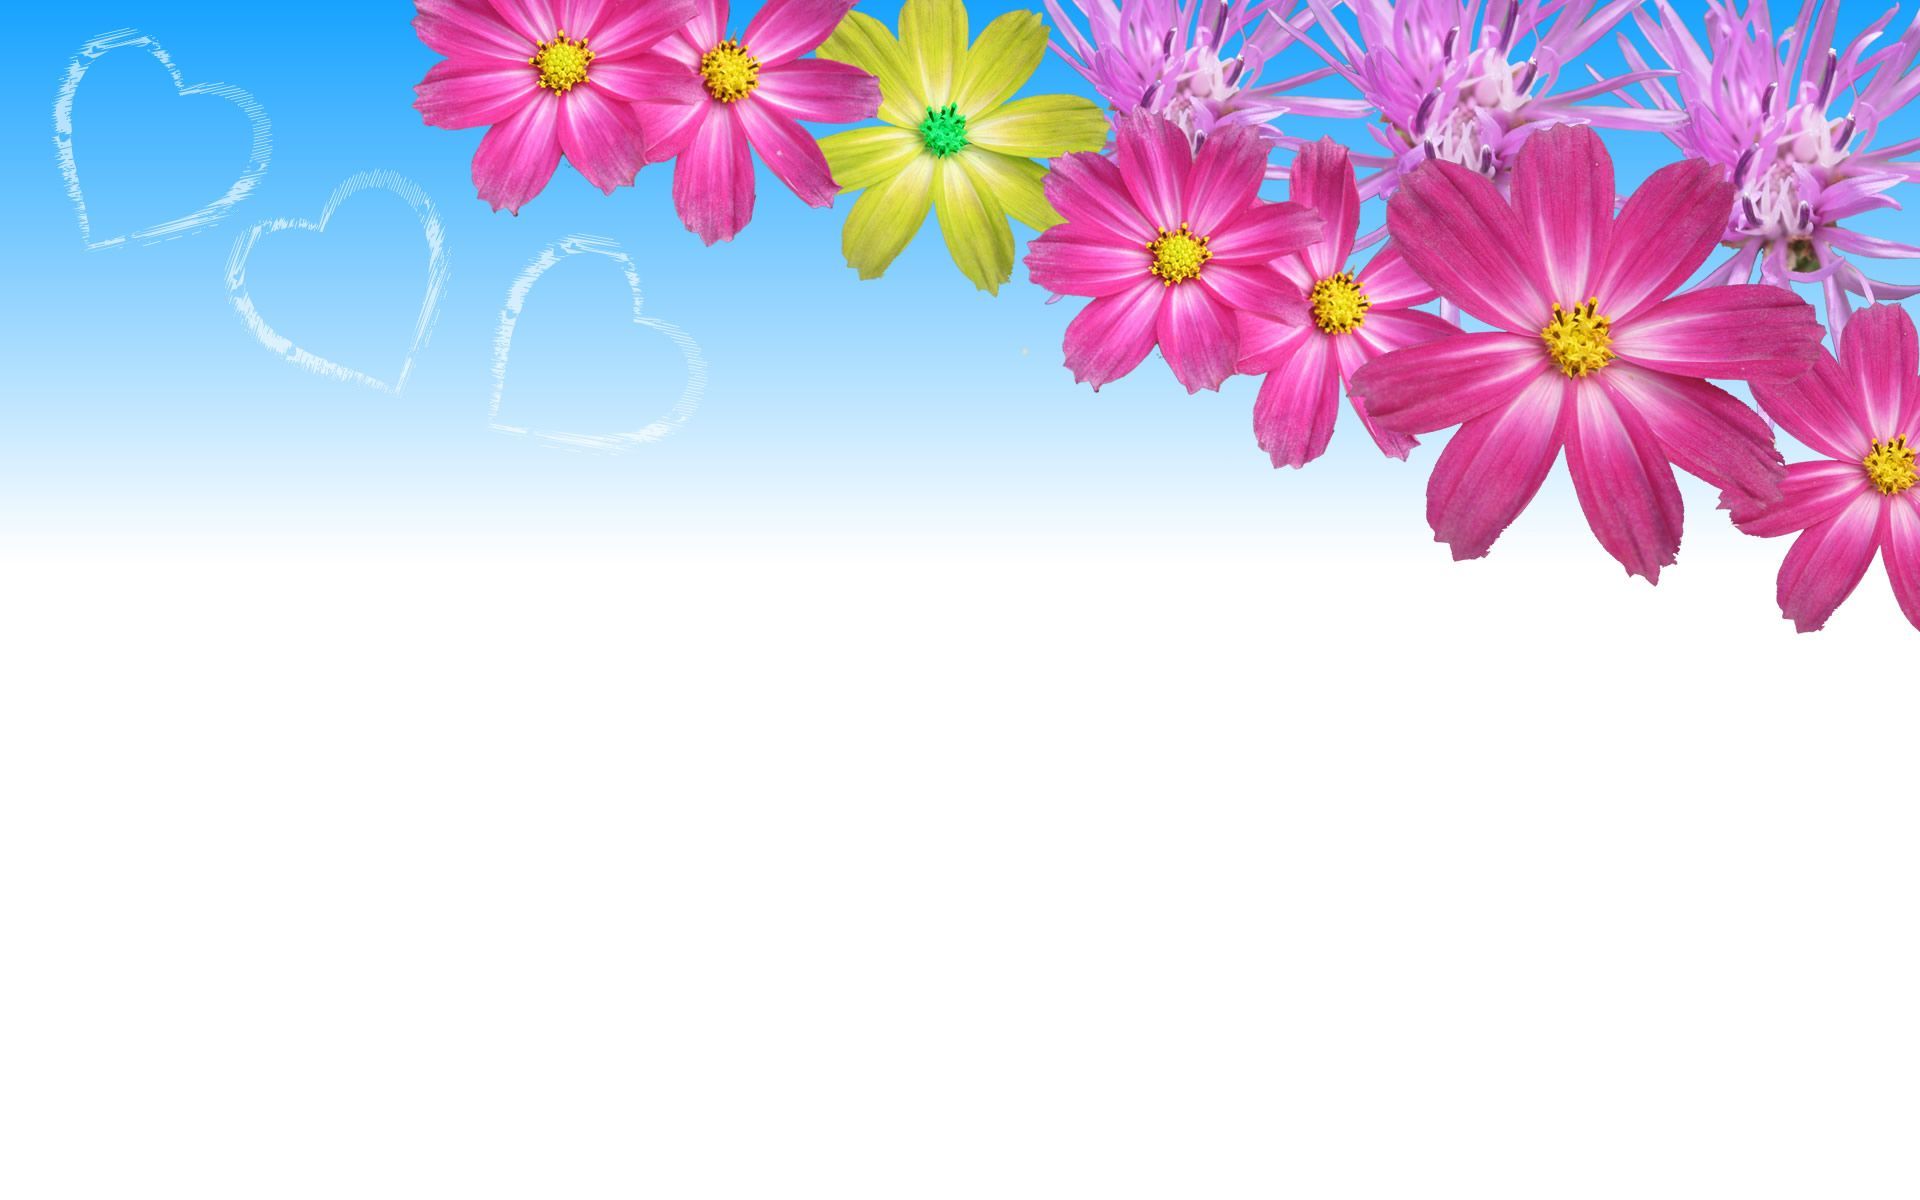 Flower Art Backgrounds Desktop #20959 Wallpaper | WallpapersTube.com